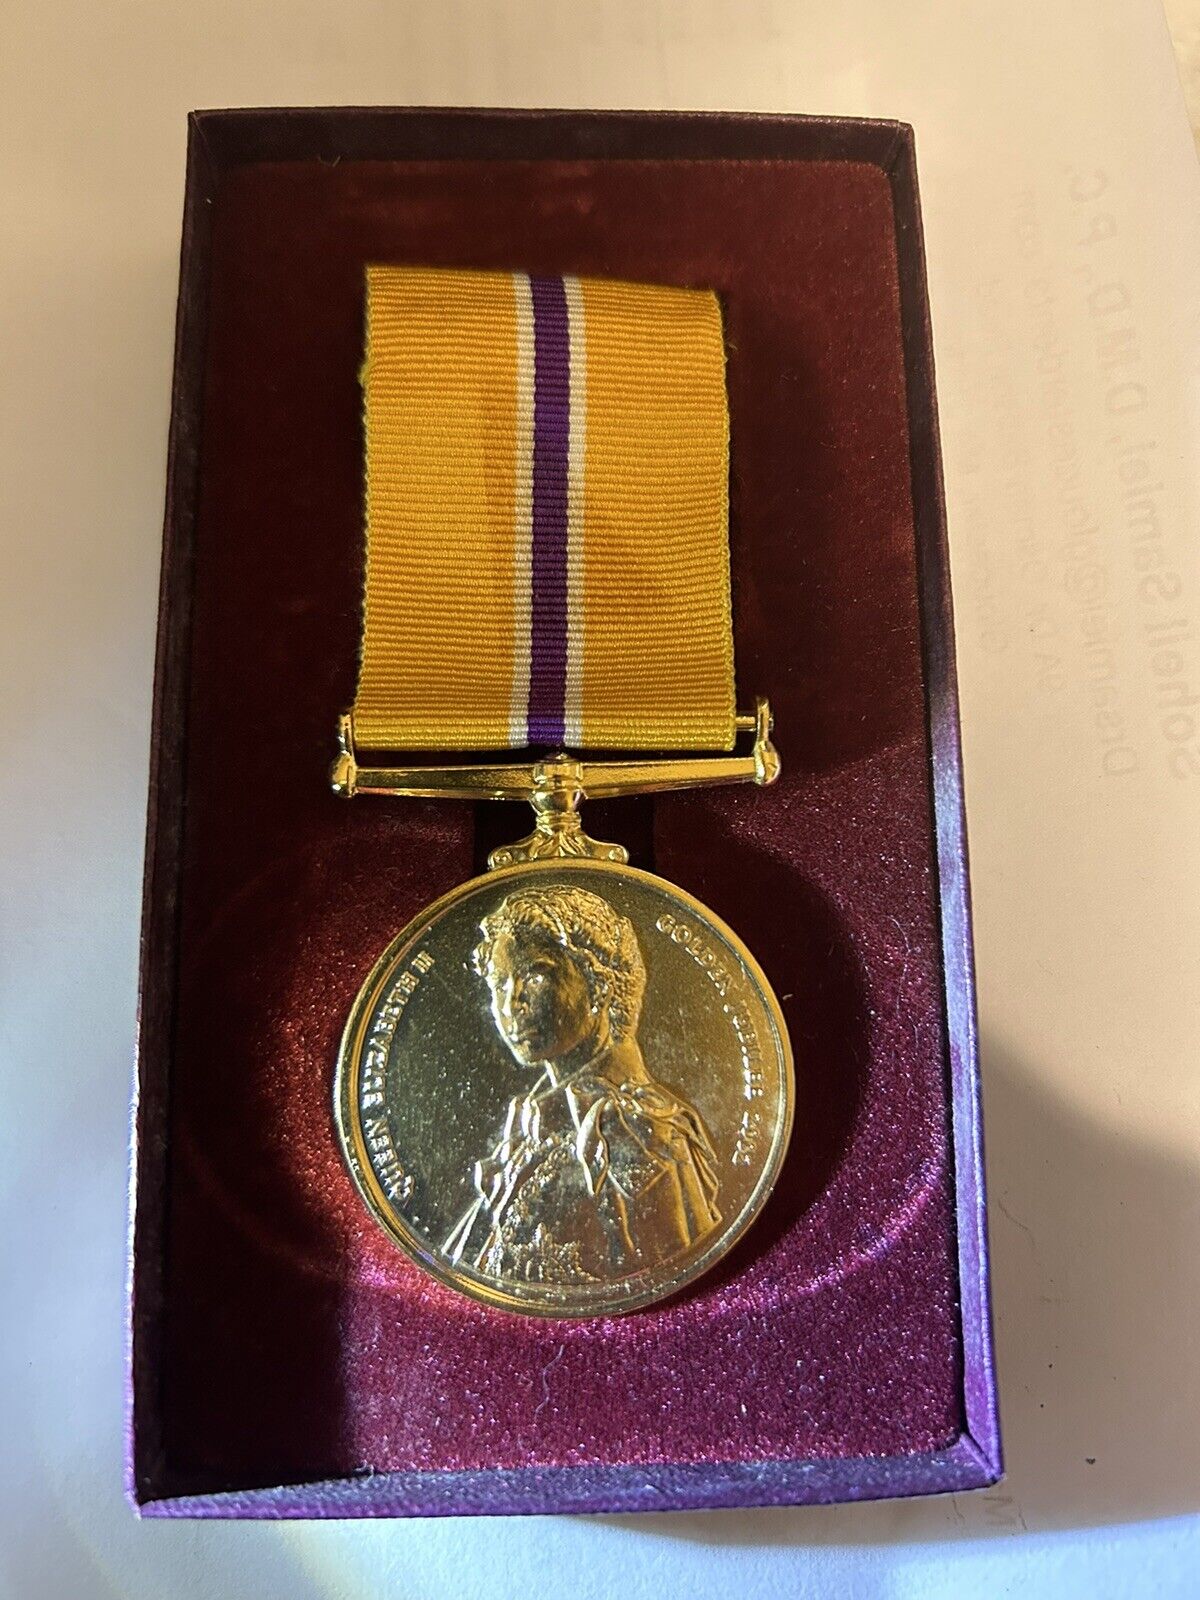 The Queen’s Golden Jubilee Medal